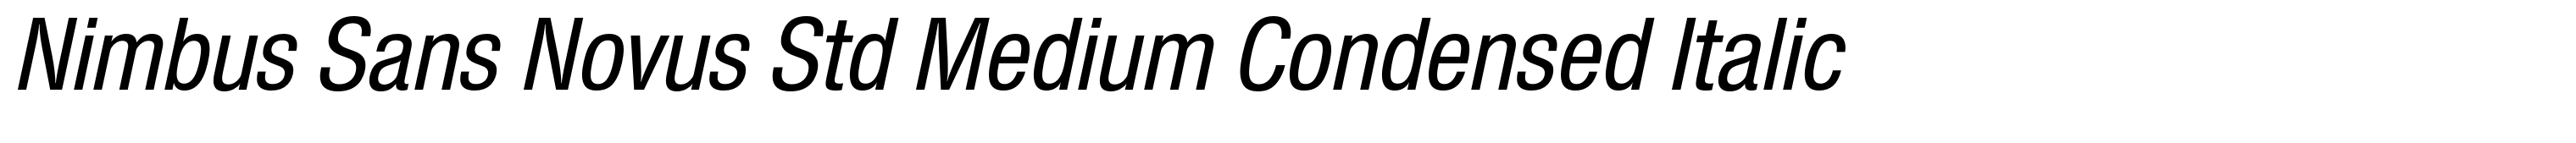 Nimbus Sans Novus Std Medium Condensed Italic